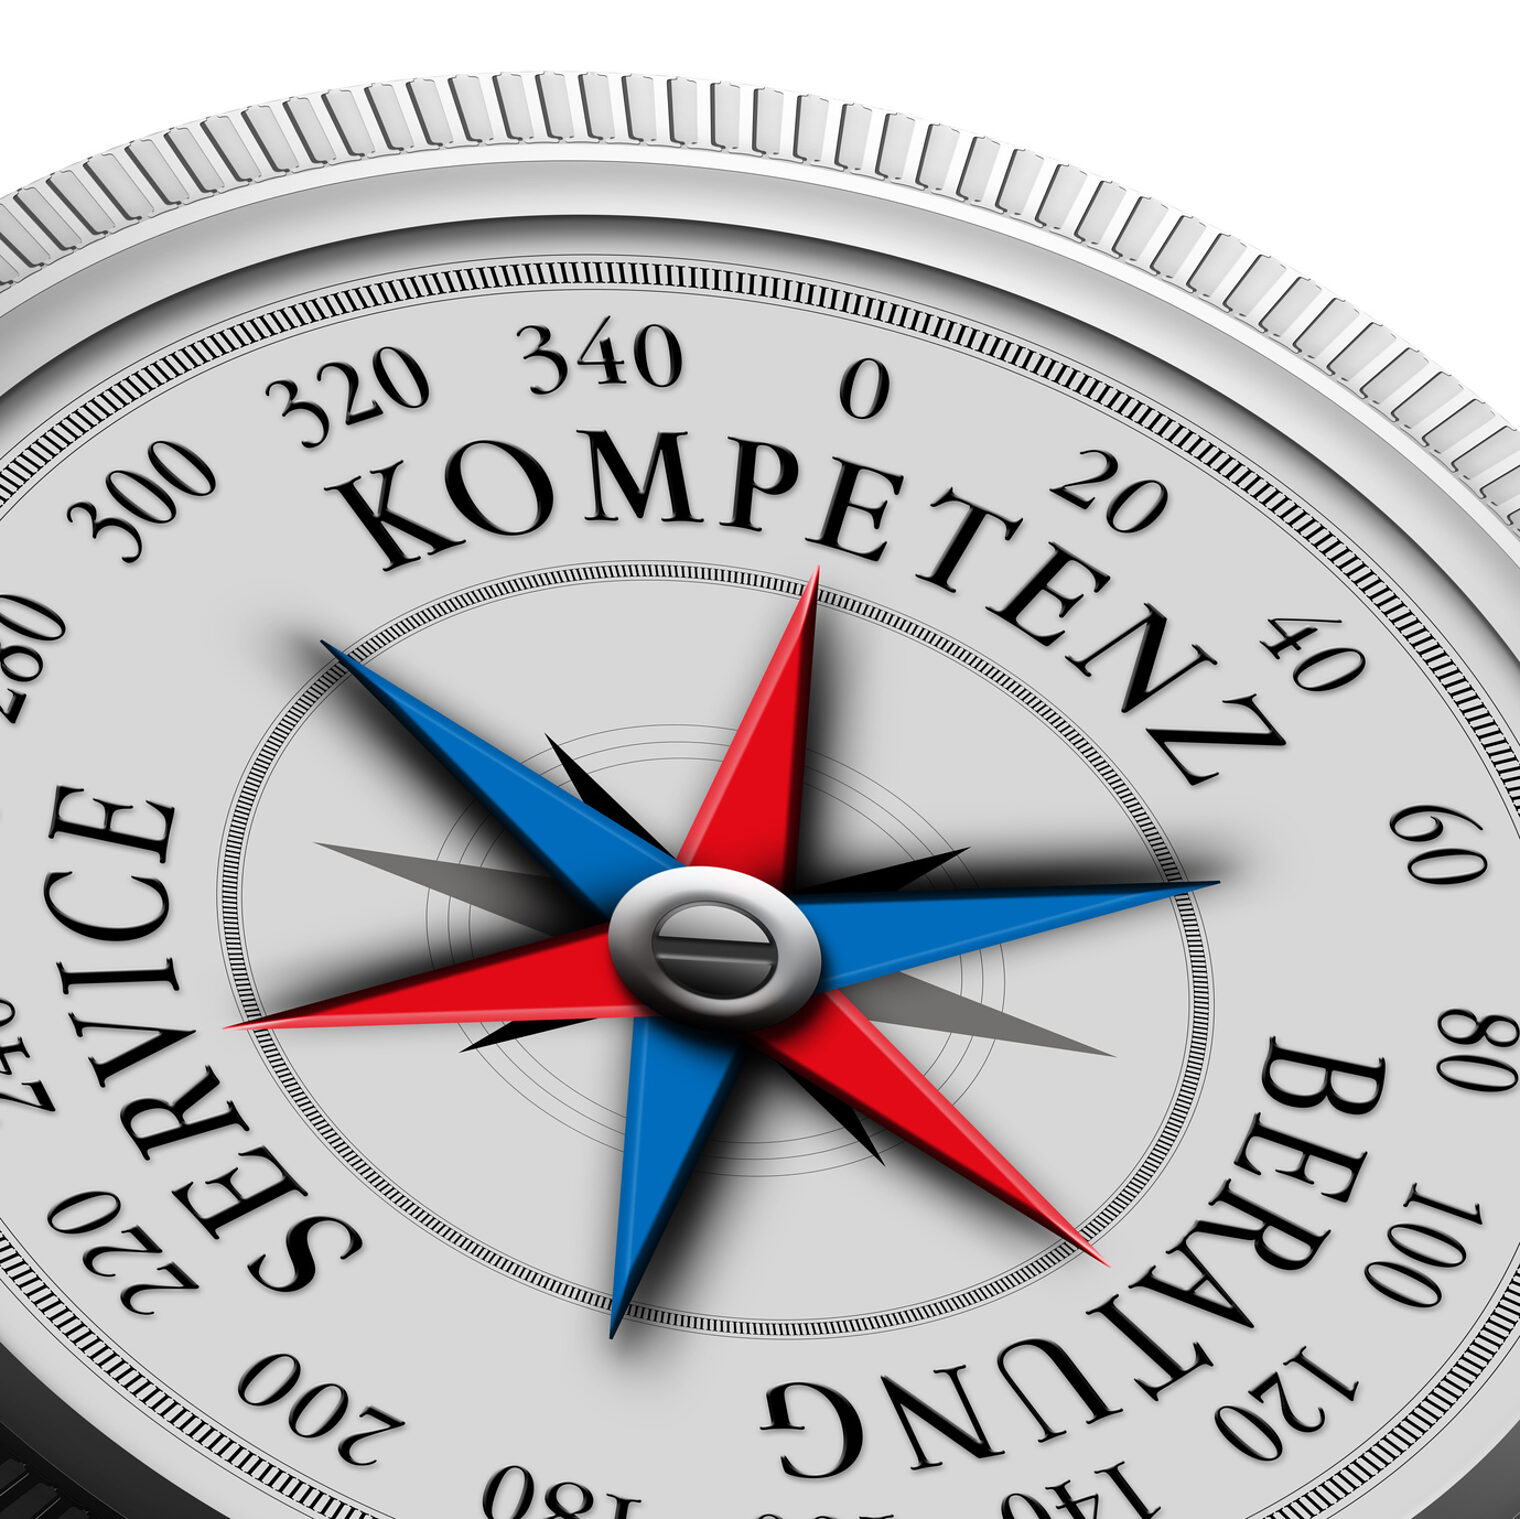 Kompass mit den Begriffen "Service", "Kompetenz" und "Beratung"